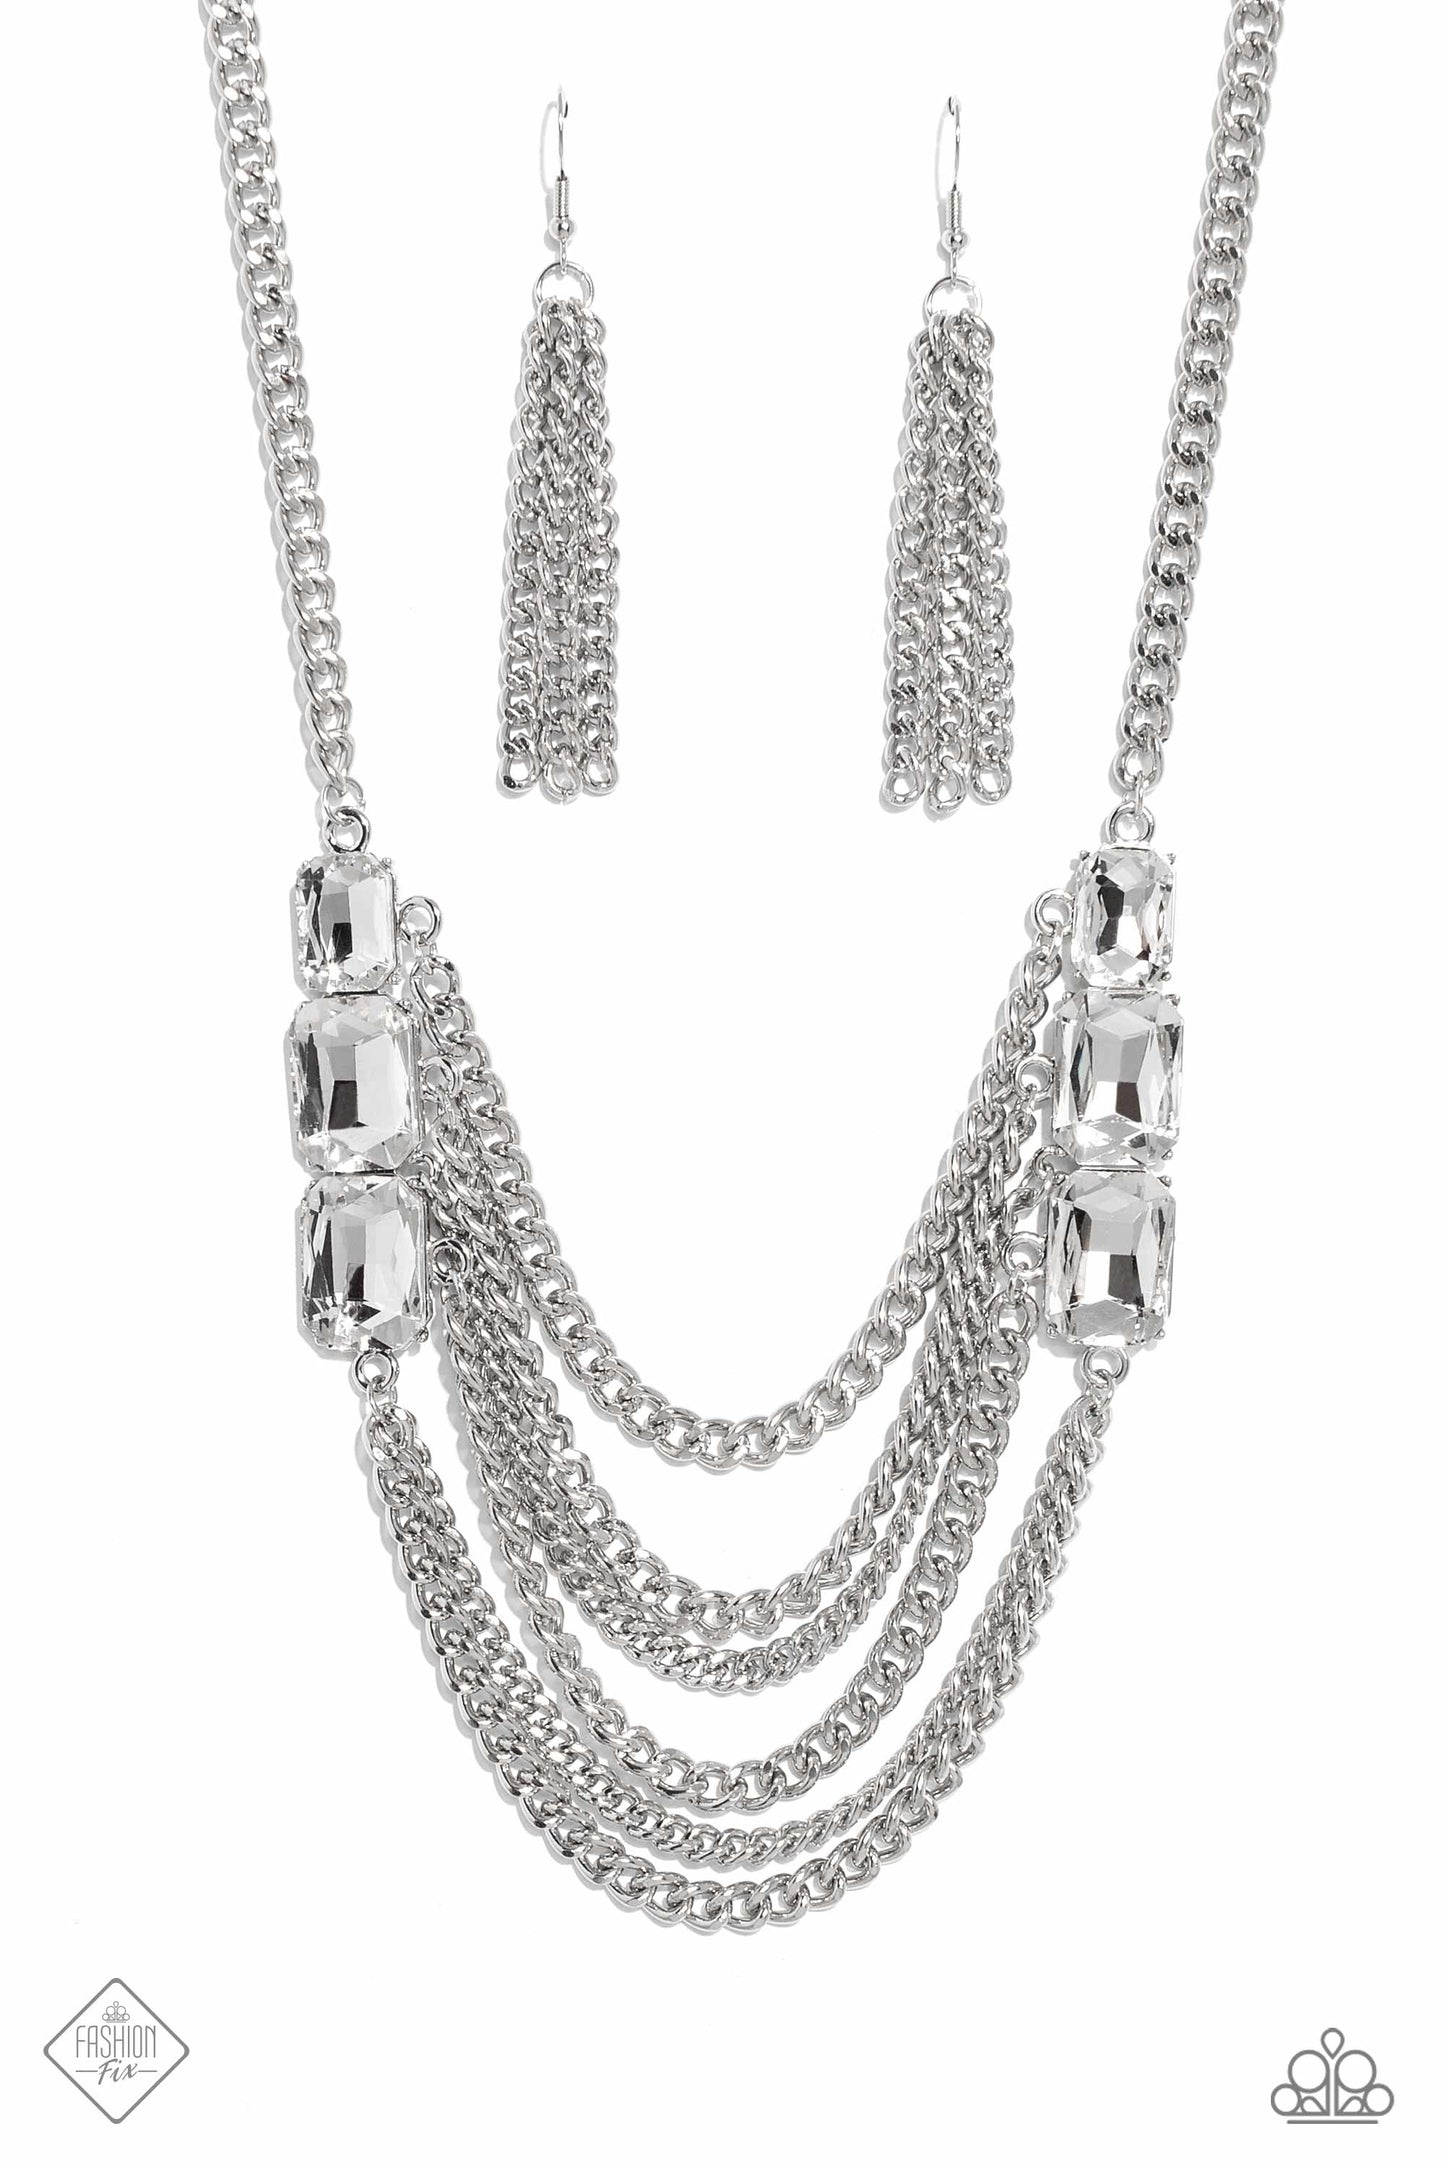 Paparazzi Come CHAIN or Shine - White Necklace - March 2023 Fashion Fix